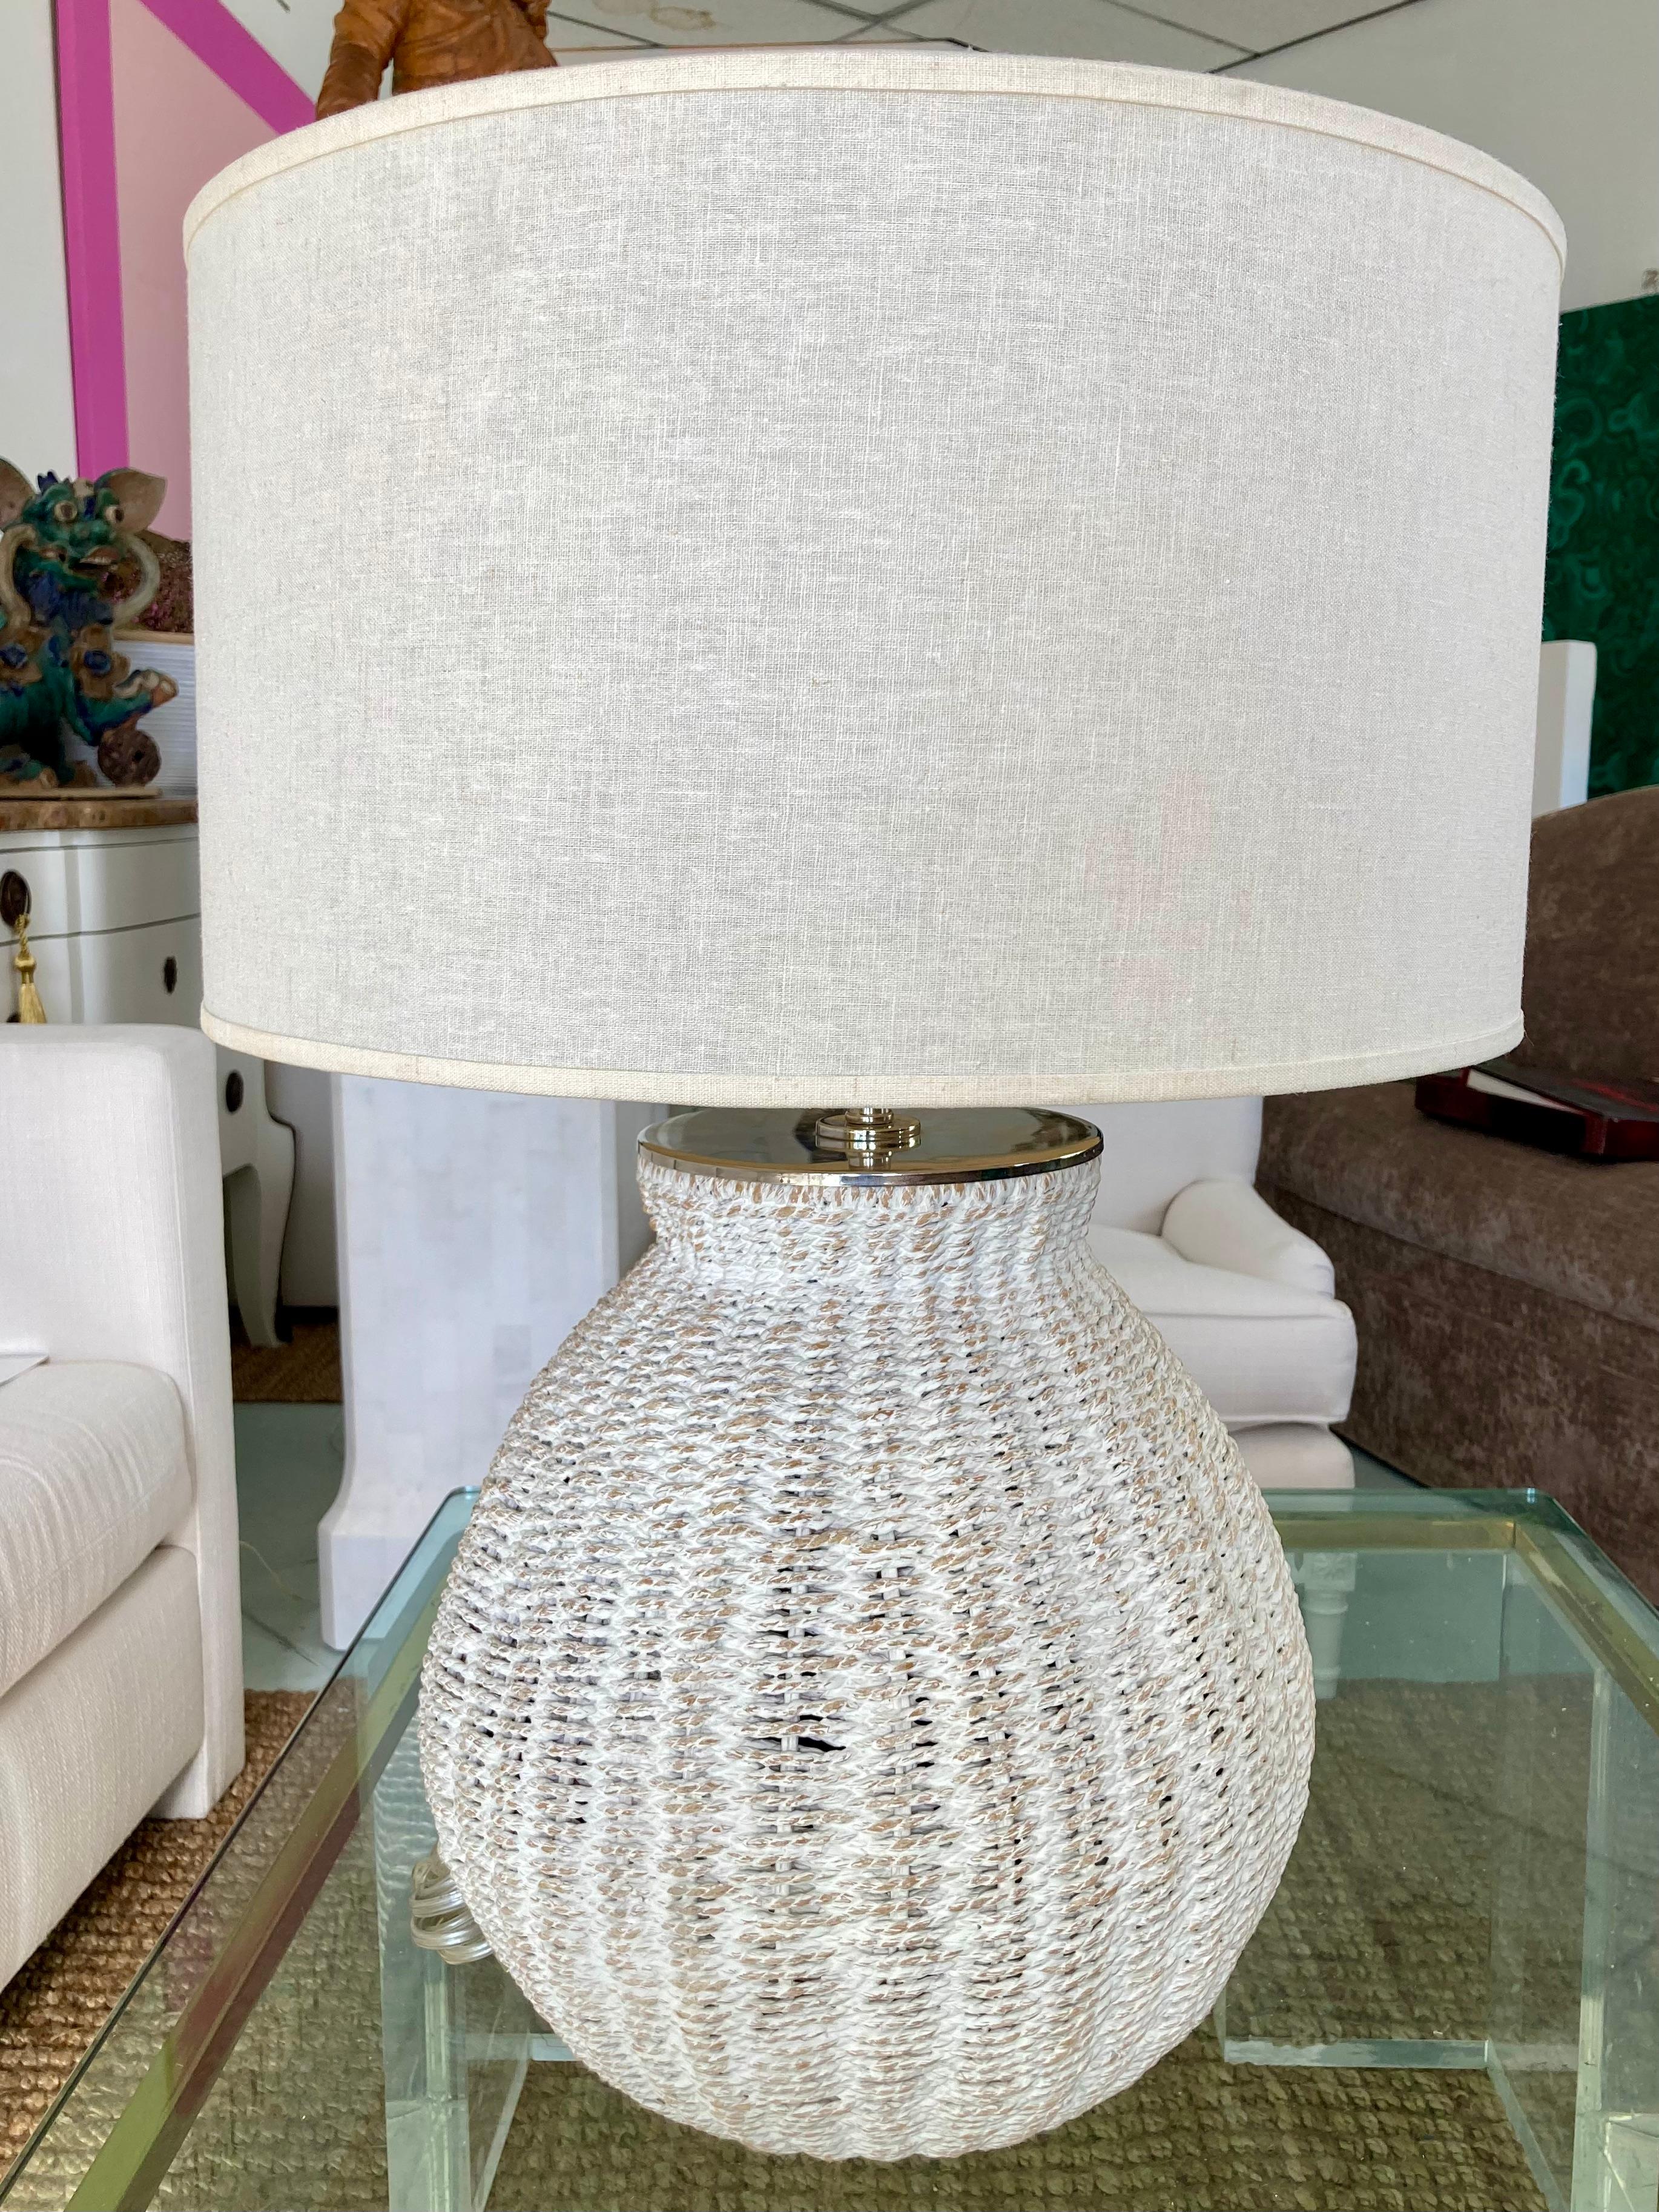 Magnifique lampe panier en osier lavé blanc avec des accessoires chromés. Un complément idéal pour vos intérieurs et dessus de table d'inspiration moderne boho chic.